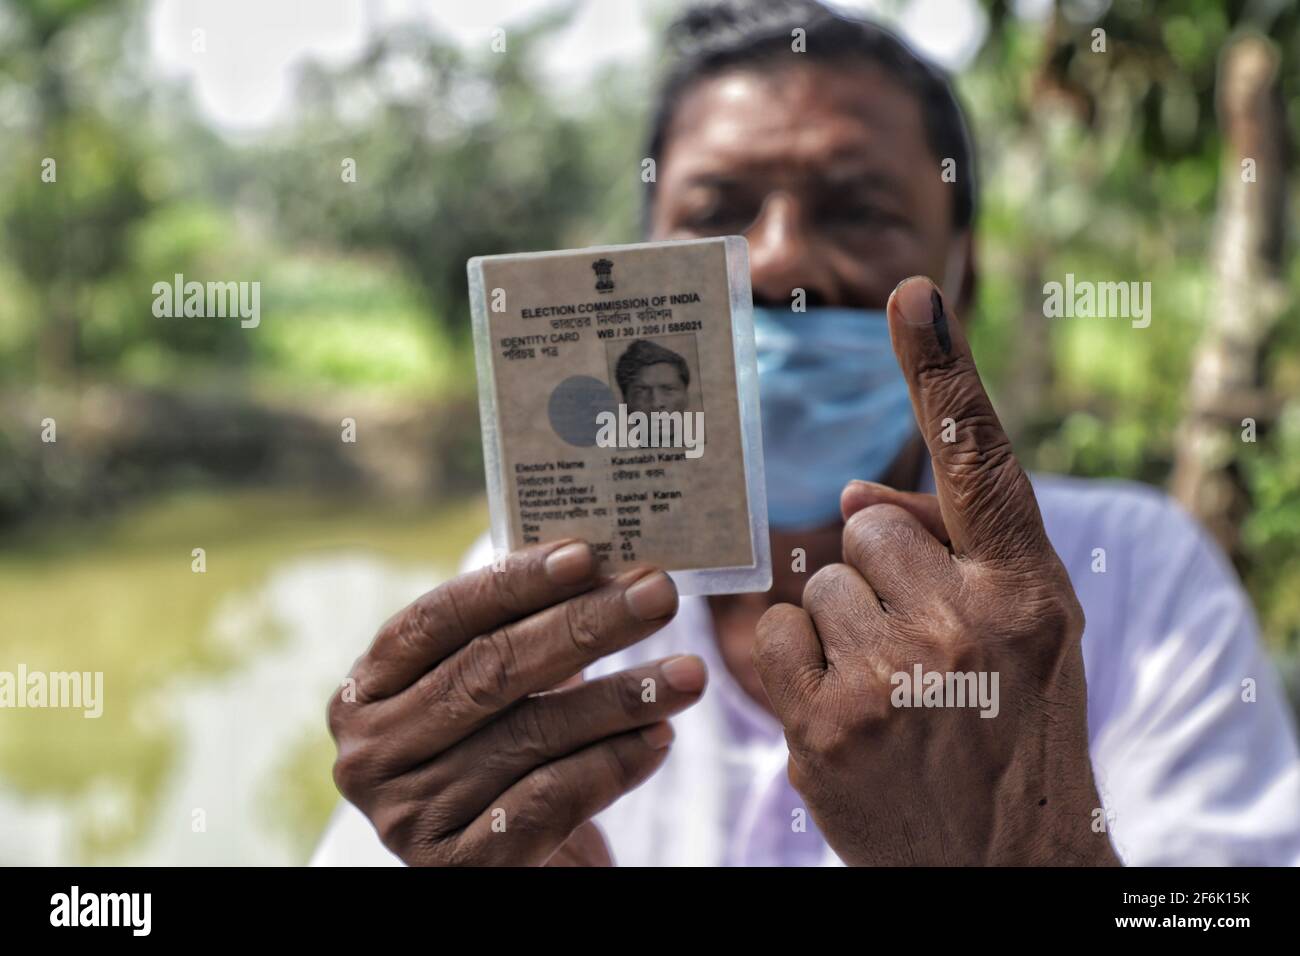 Un homme montre son doigt enchassé et la carte d'identité de l'électeur après avoir voté à East Midnapur.les électeurs de Nandigram ont voté lors de la deuxième phase des élections d'assemblée du Bengale occidental sous le déploiement de forces centrales armées lourdes pour rendre les élections pacifiques. Banque D'Images